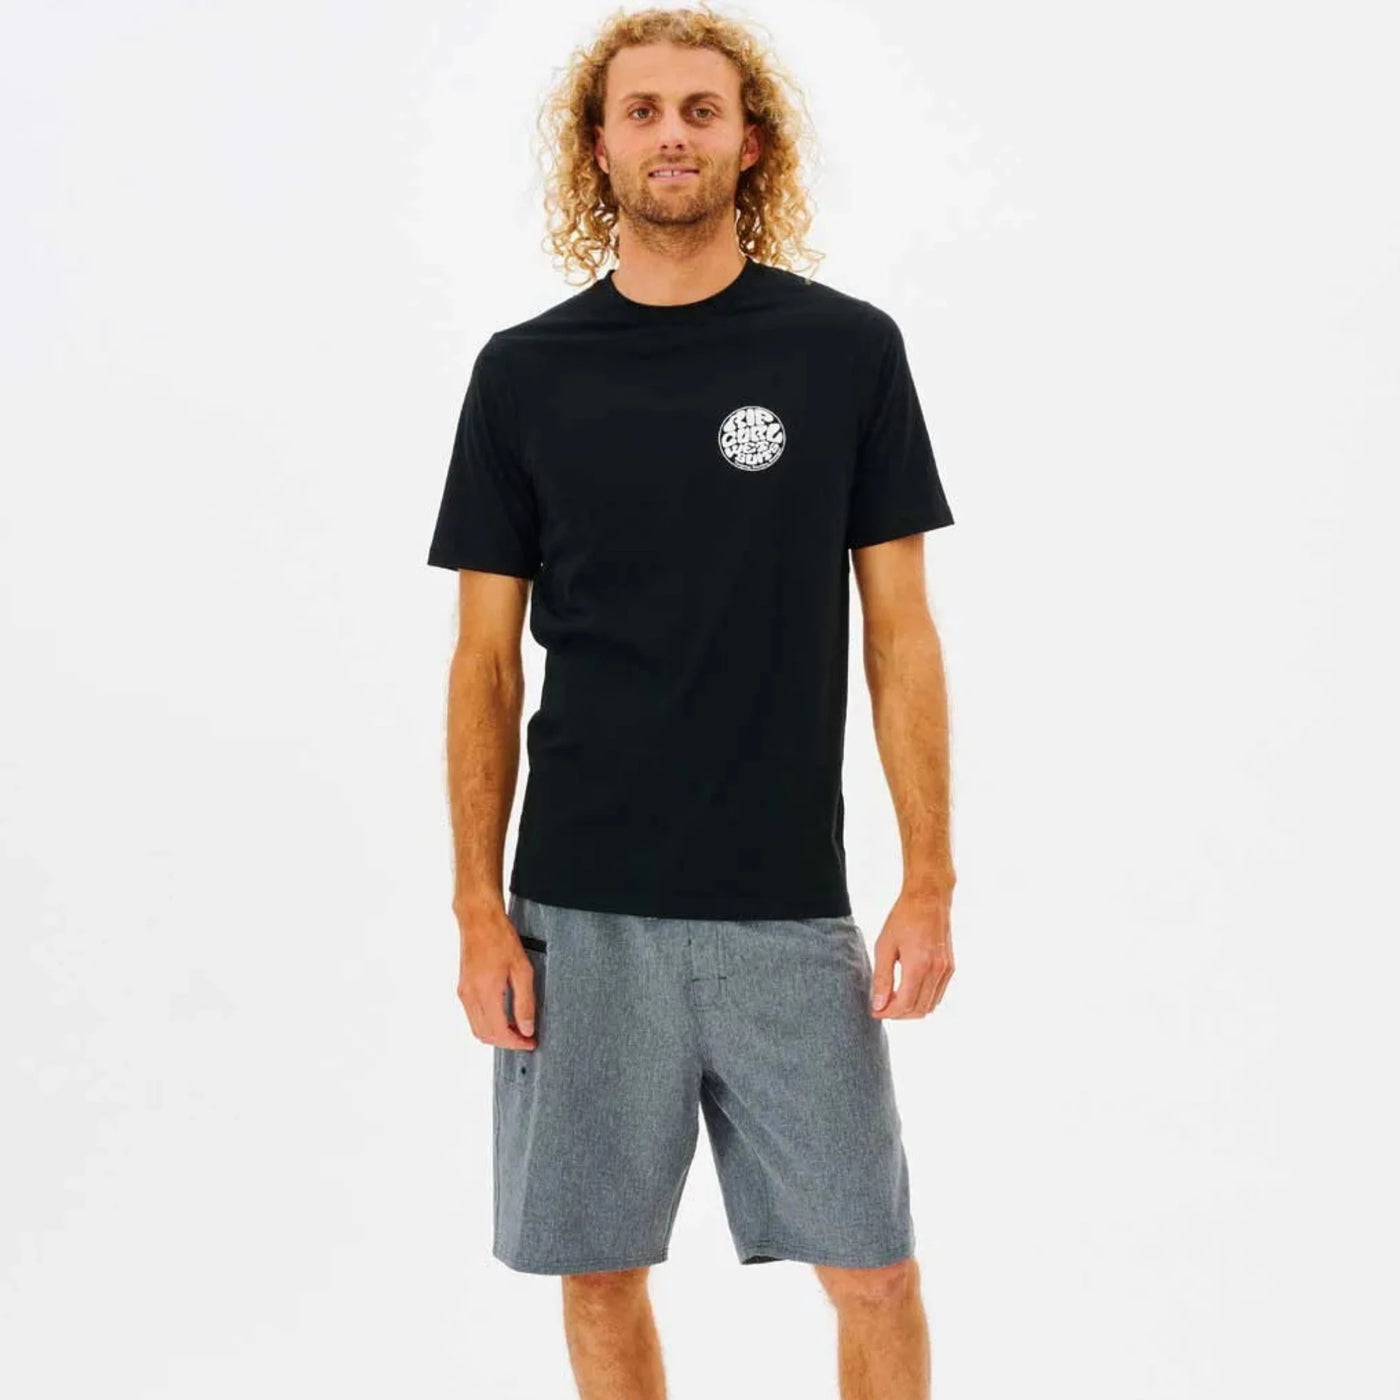 Rip Curl Icons of Surf Short Sleeve Rashie - Black